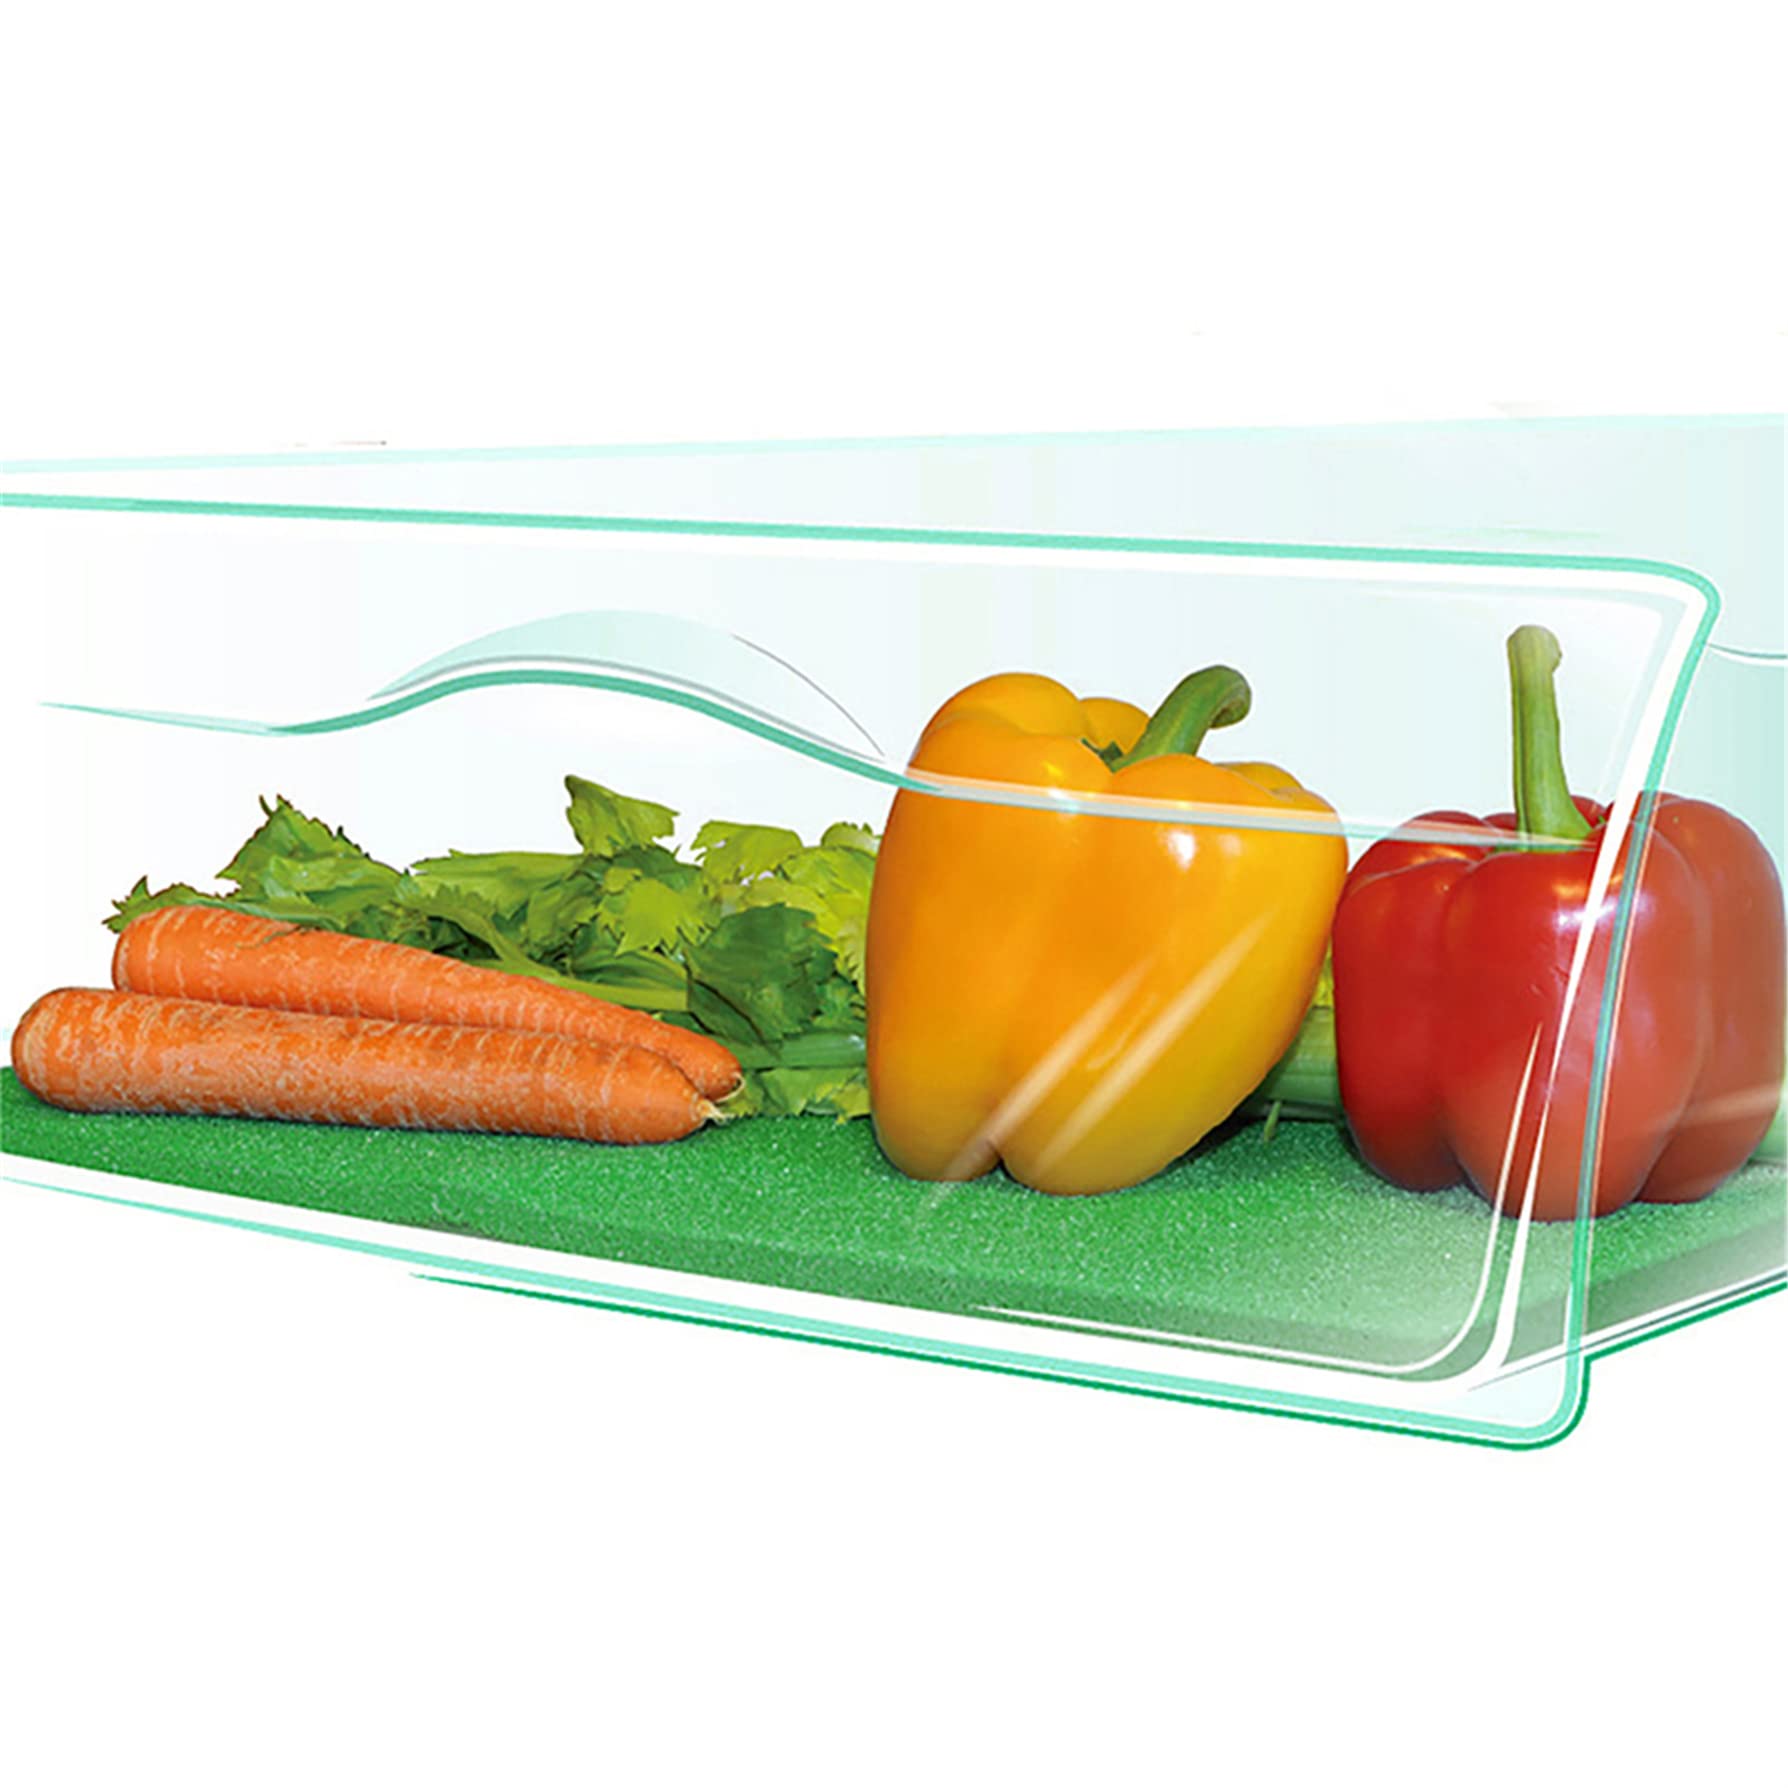 DAMAJI Fruit Vegetable Liner,Refrigerator Shelf Liners,Produce Saver Washable Life Extender Foam Mats for Fridge Refrigerator Drawers (1pc)